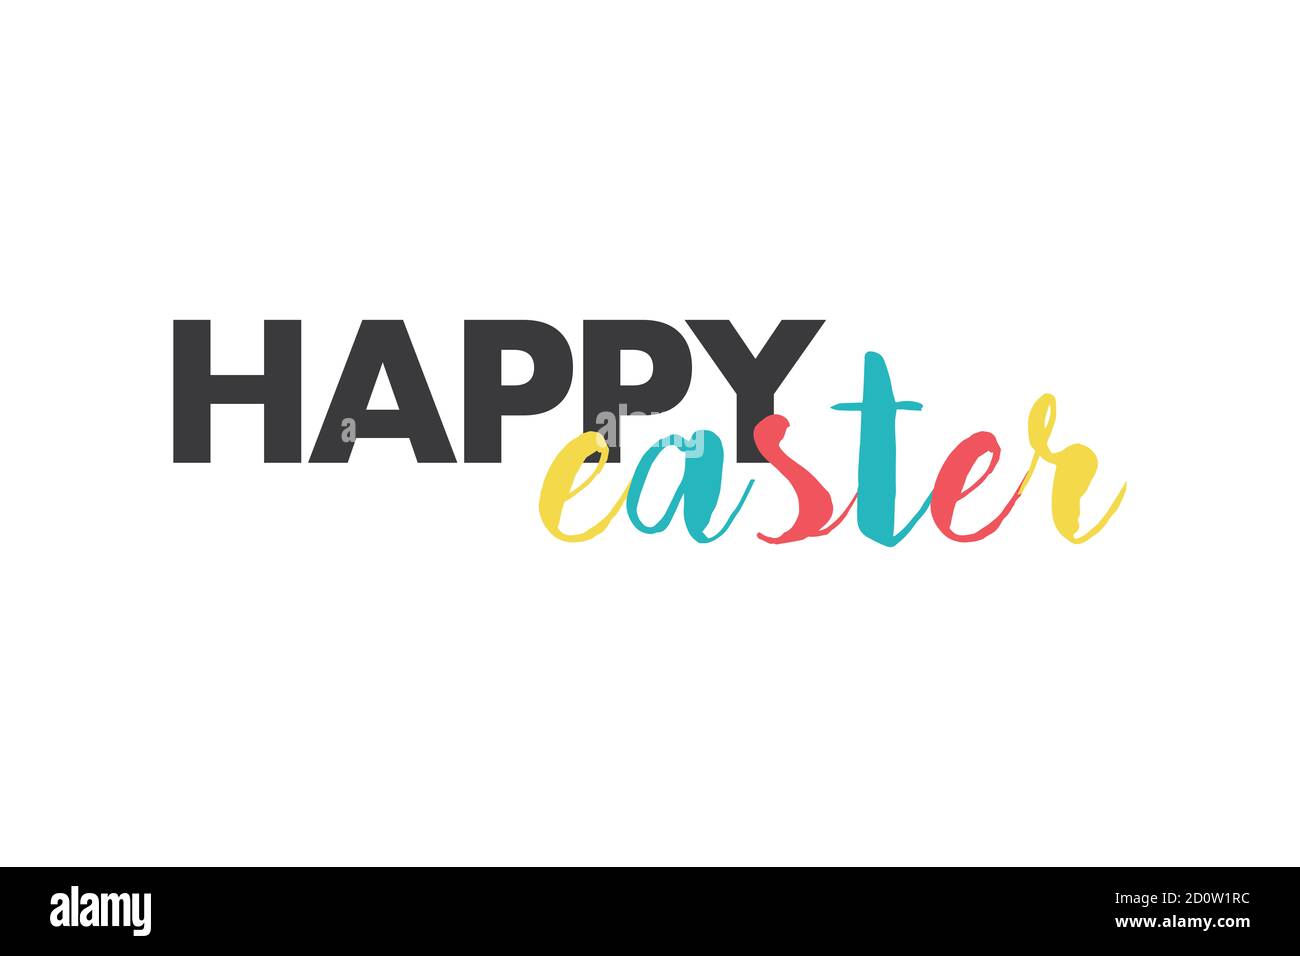 Design grafico moderno, divertente e colorato di una "Pasqua felice" in rosso, giallo, blu e grigio. Tipografia urbana manoscritta. Foto Stock